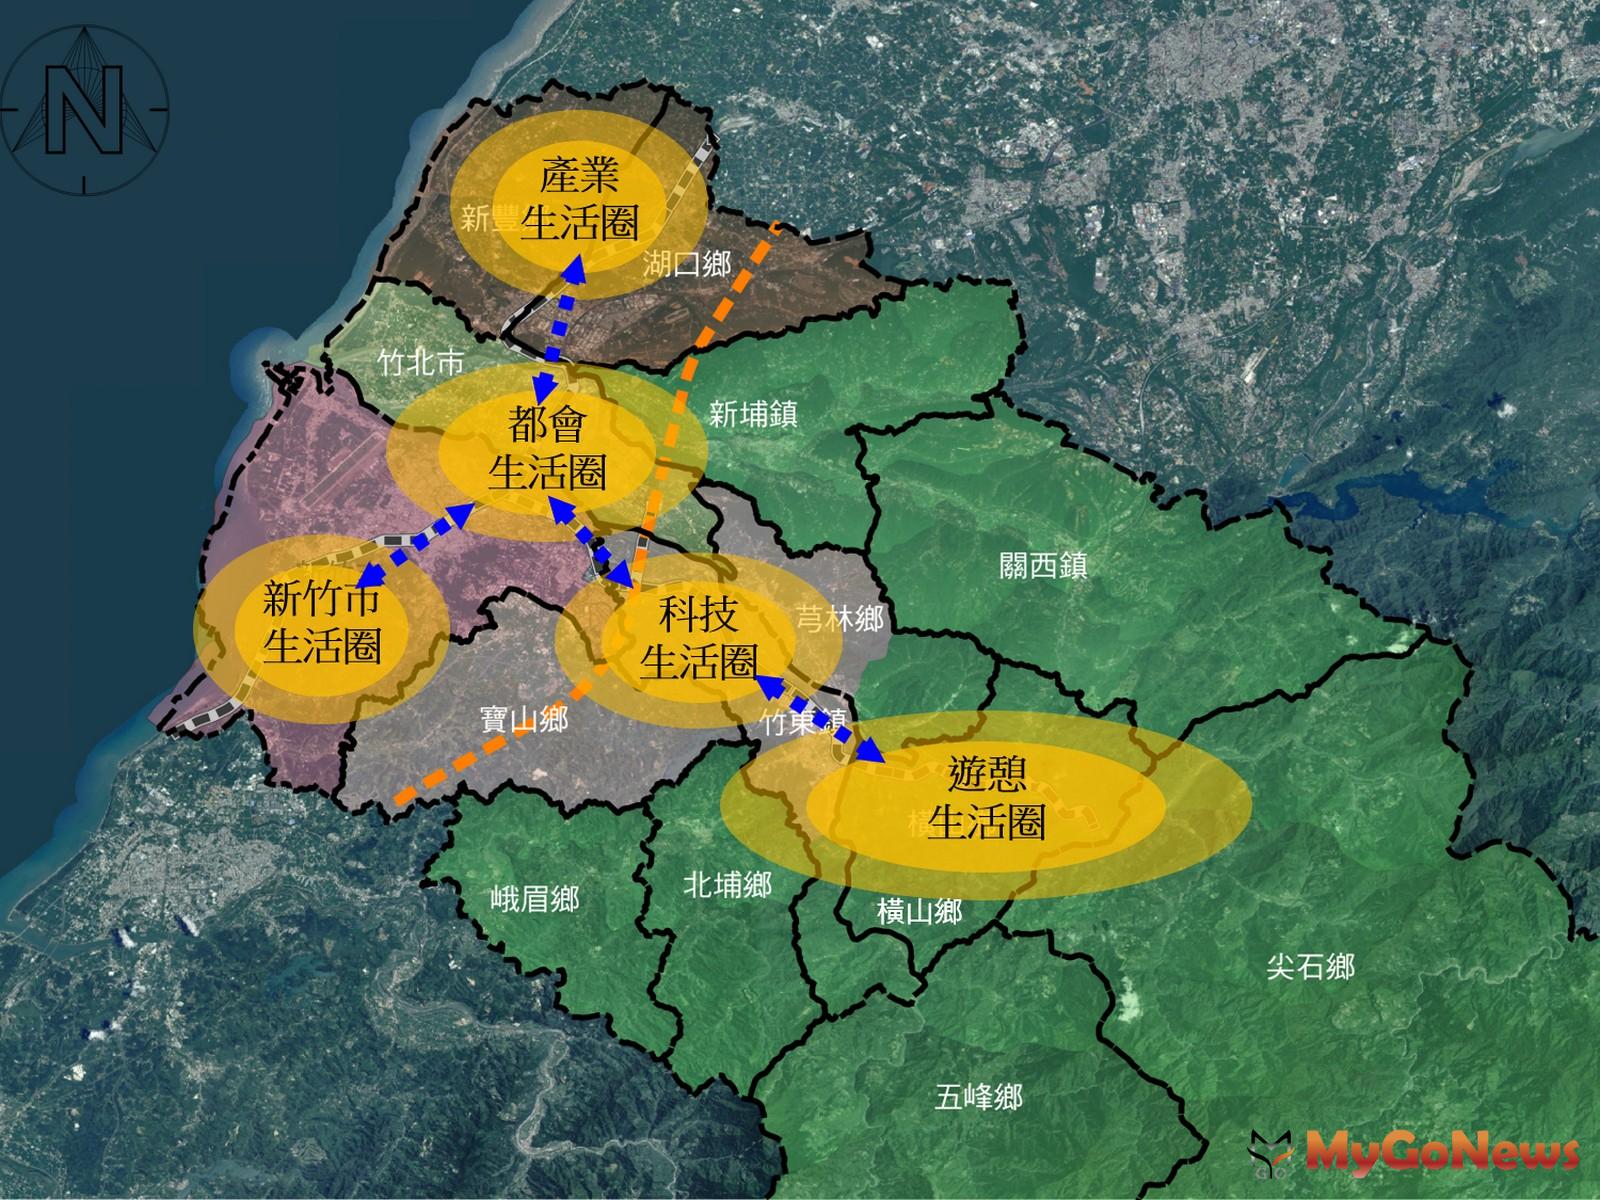 藍線輕軌規劃路網藍圖，紓解新竹縣市交通